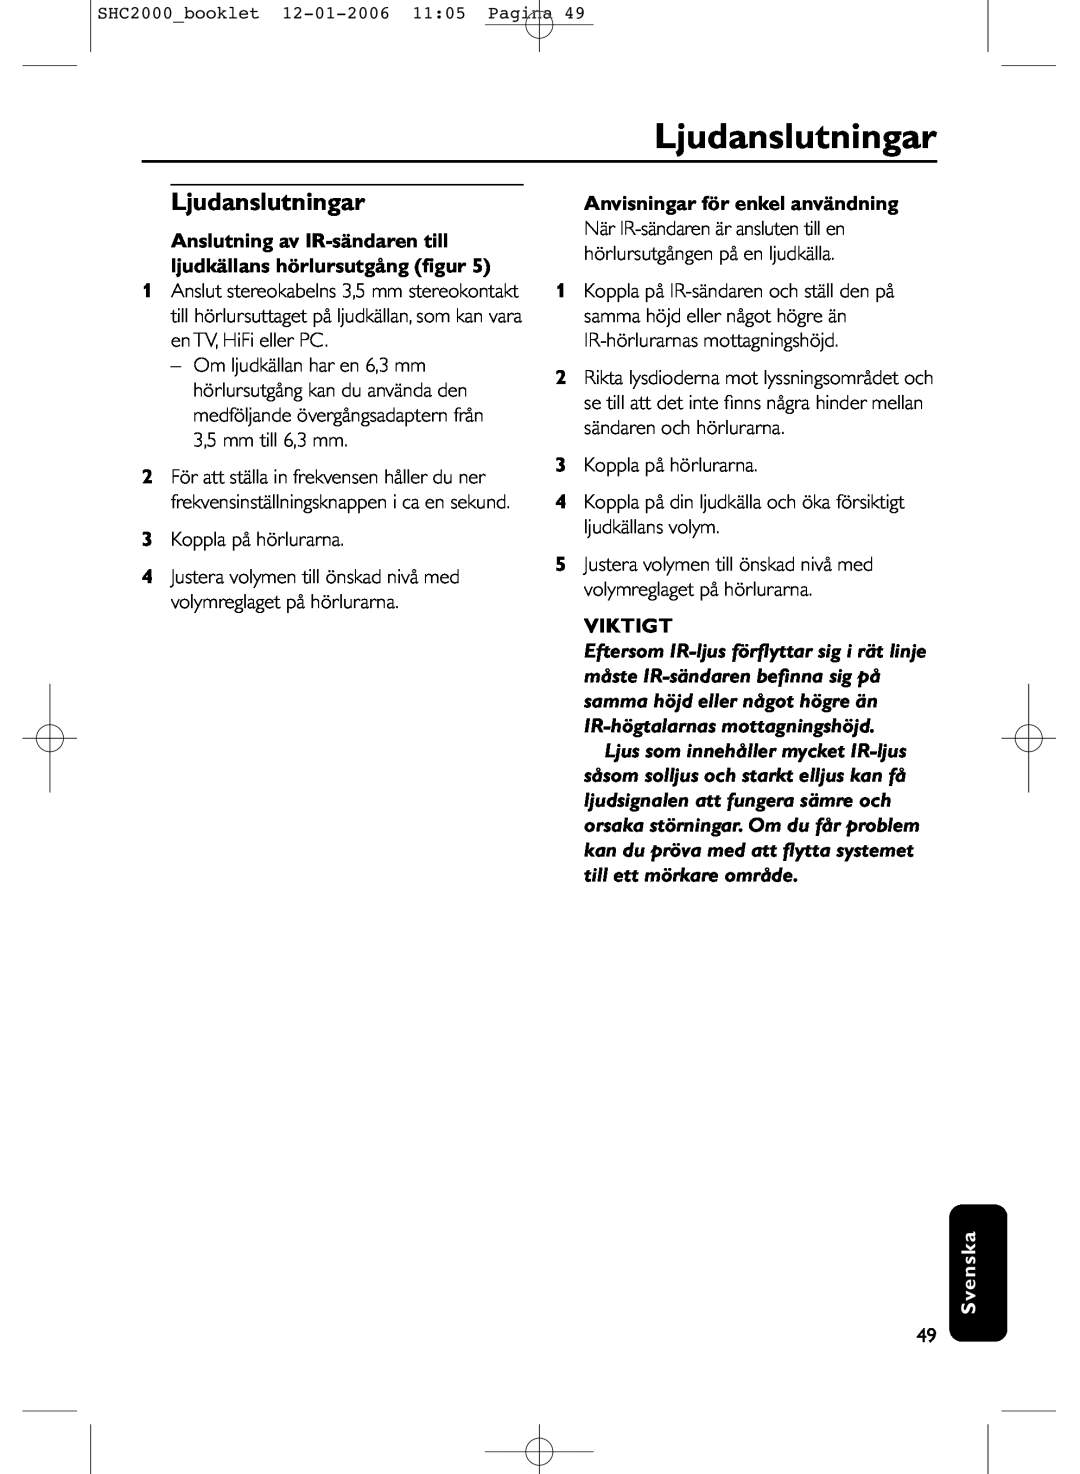 Philips SHC2000 manual Ljudanslutningar, Anvisningar för enkel användning, Viktigt, Svenska 